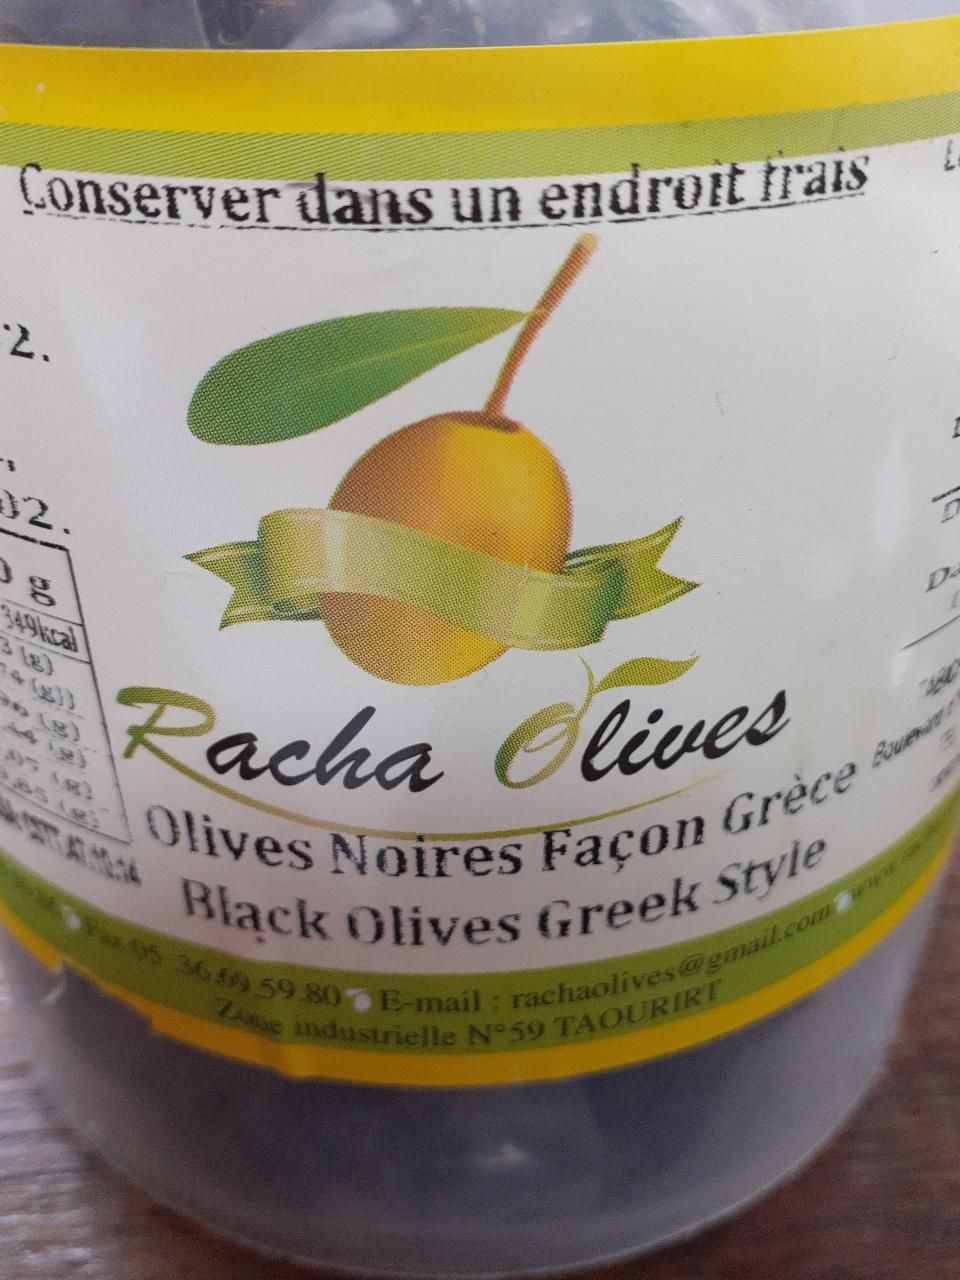 Fotografie - Black Olives Greek Style Racha Olives